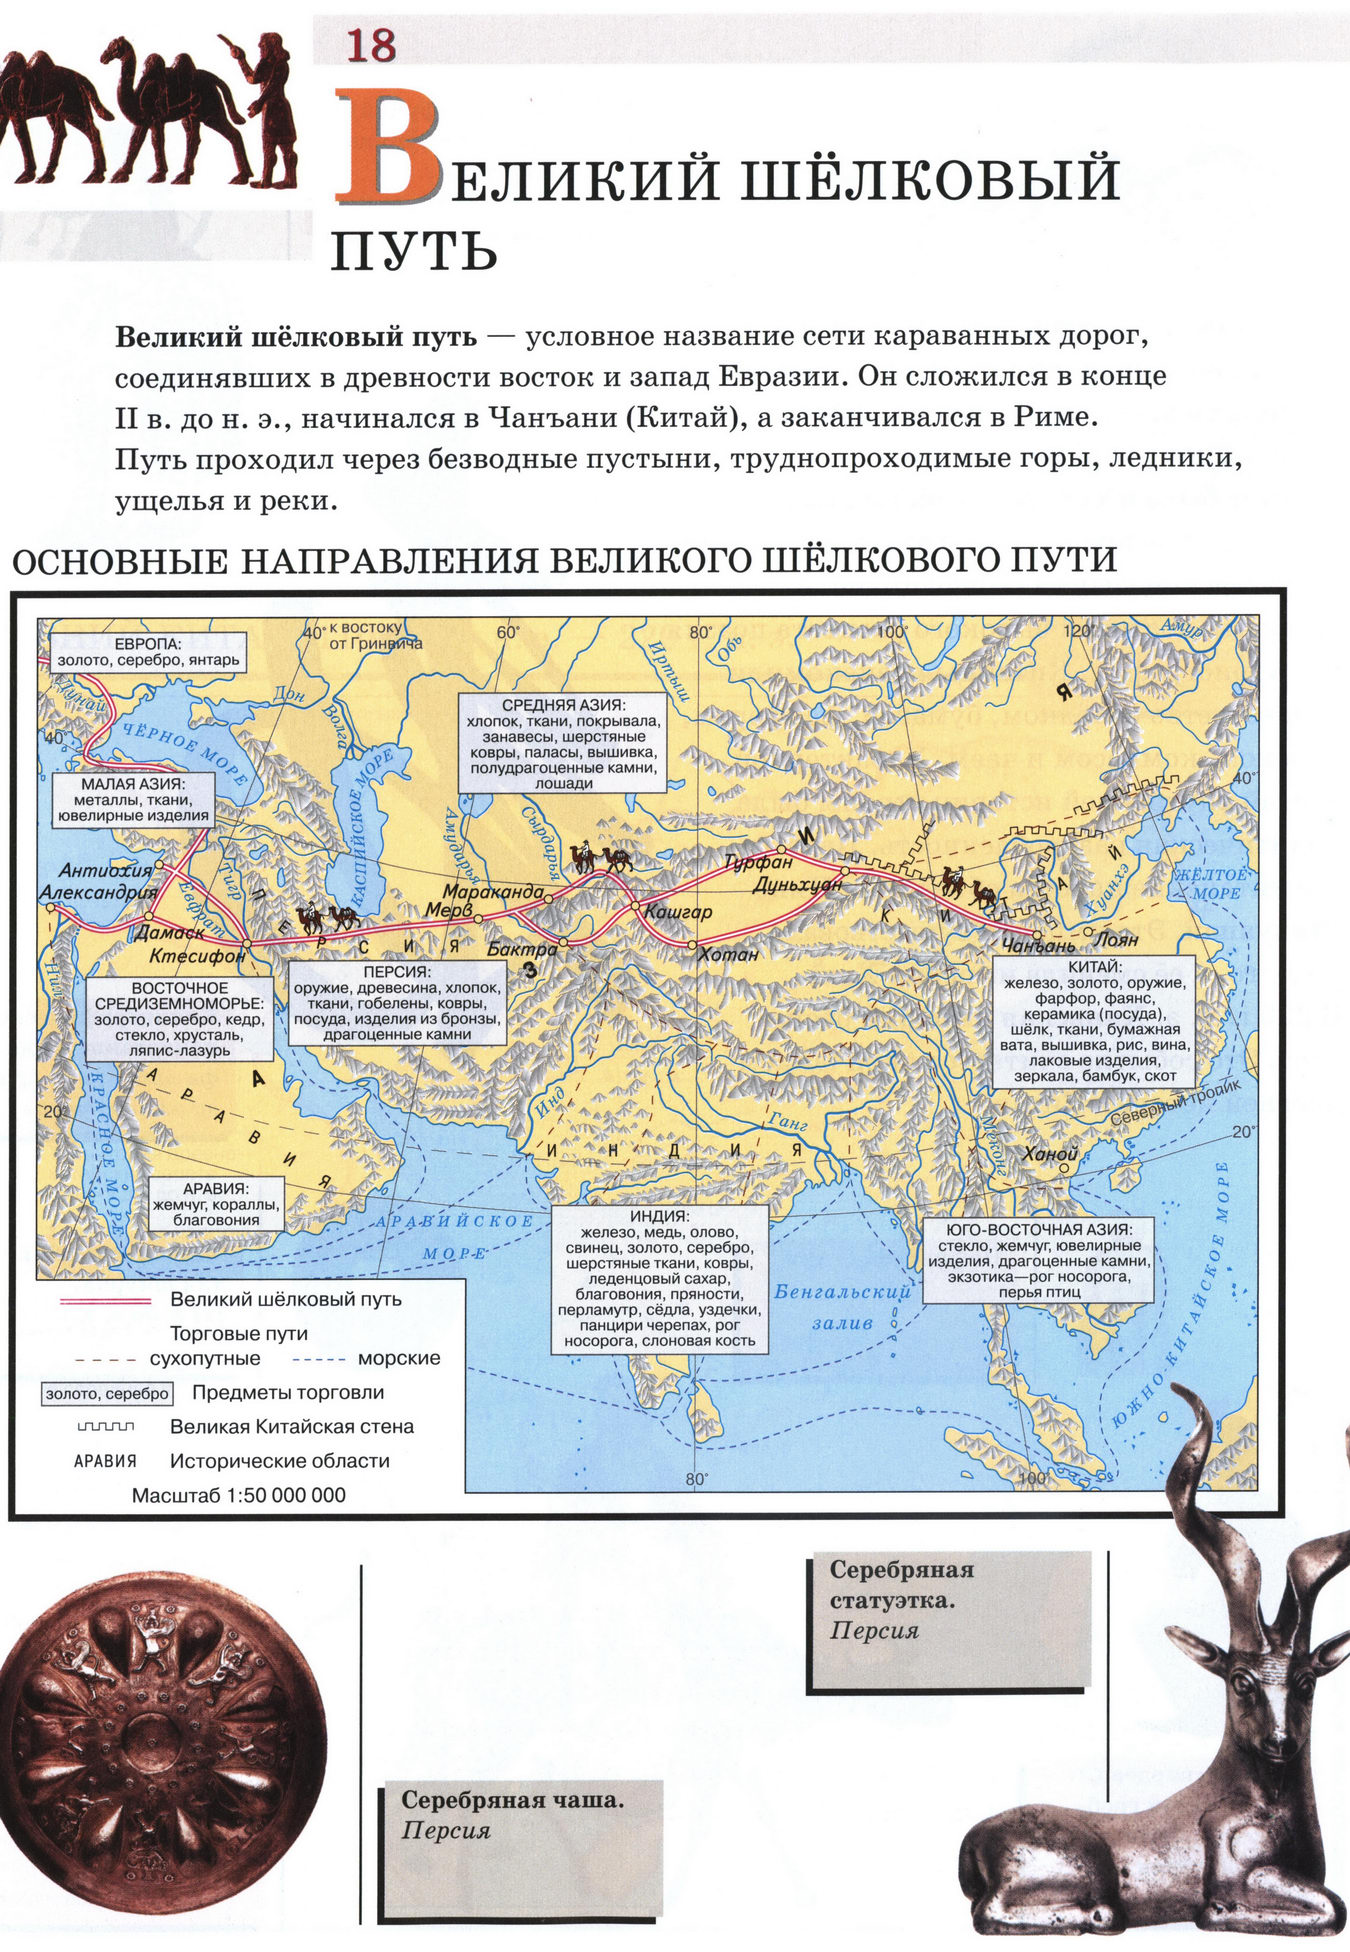 Великий шелковый путь - карта атласа по истории Древнего мира